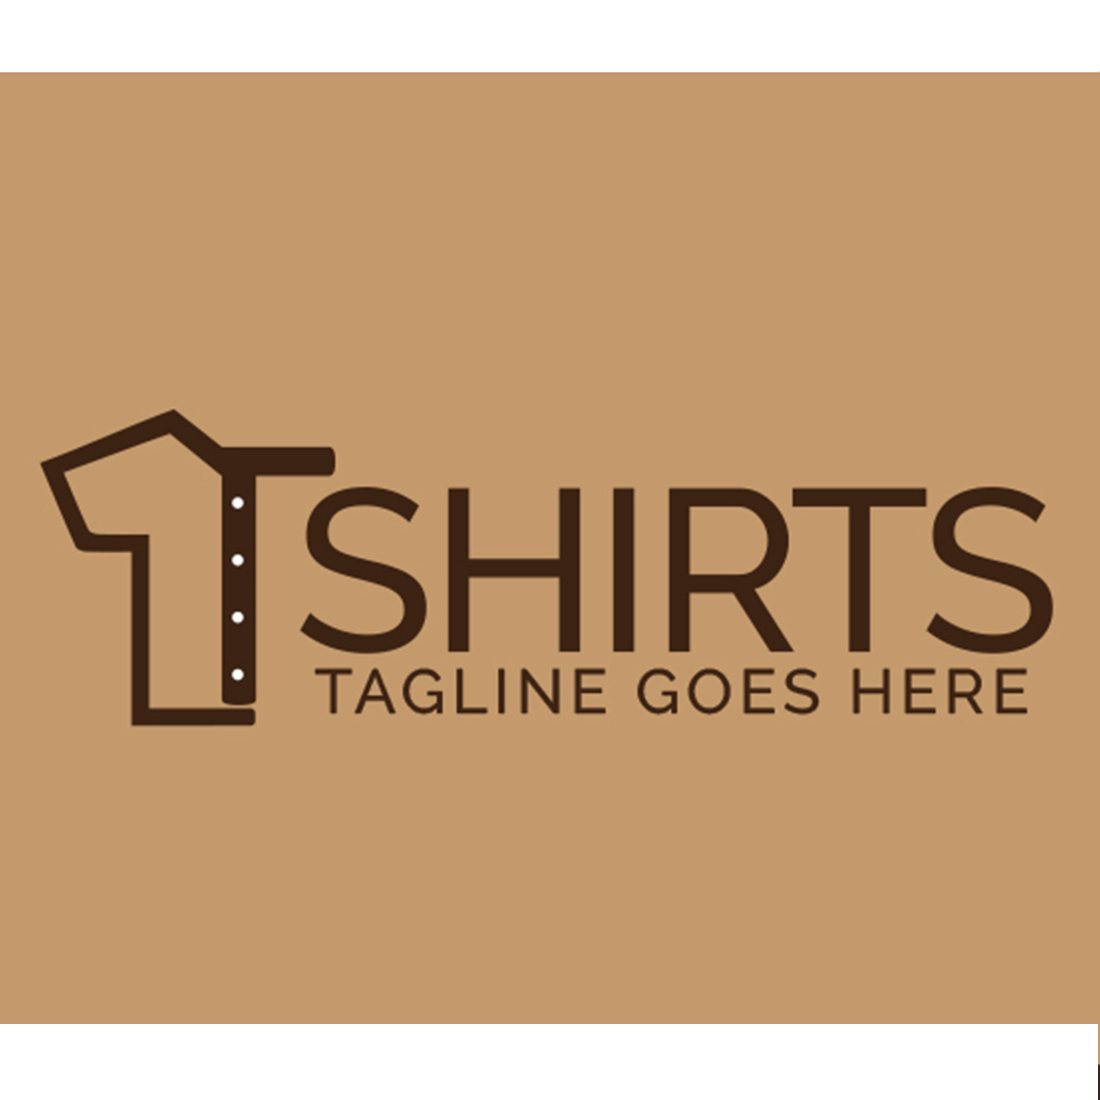 Unique logo image for t-shirts